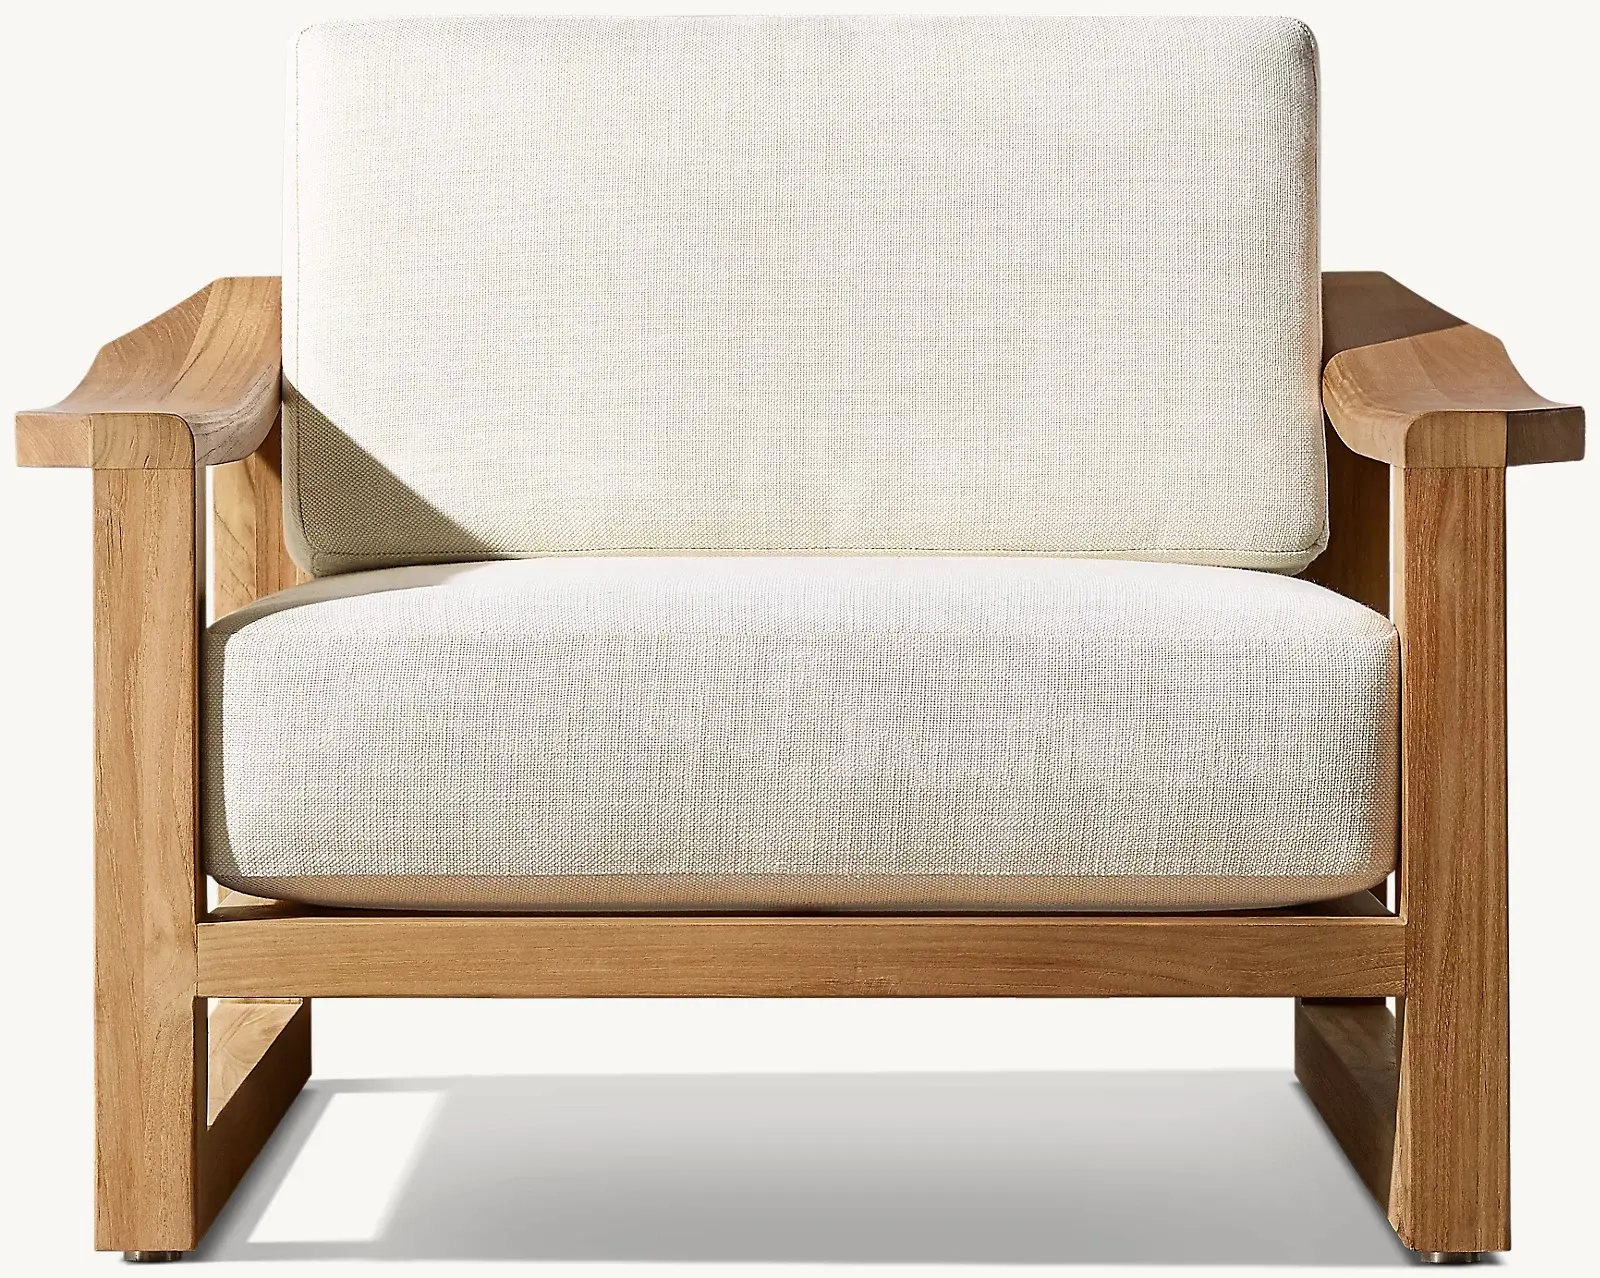 Садовый диван стул мебель из тикового дерева материал натуральный выветренный цвет отделка современный стиль открытый диван стул мебель